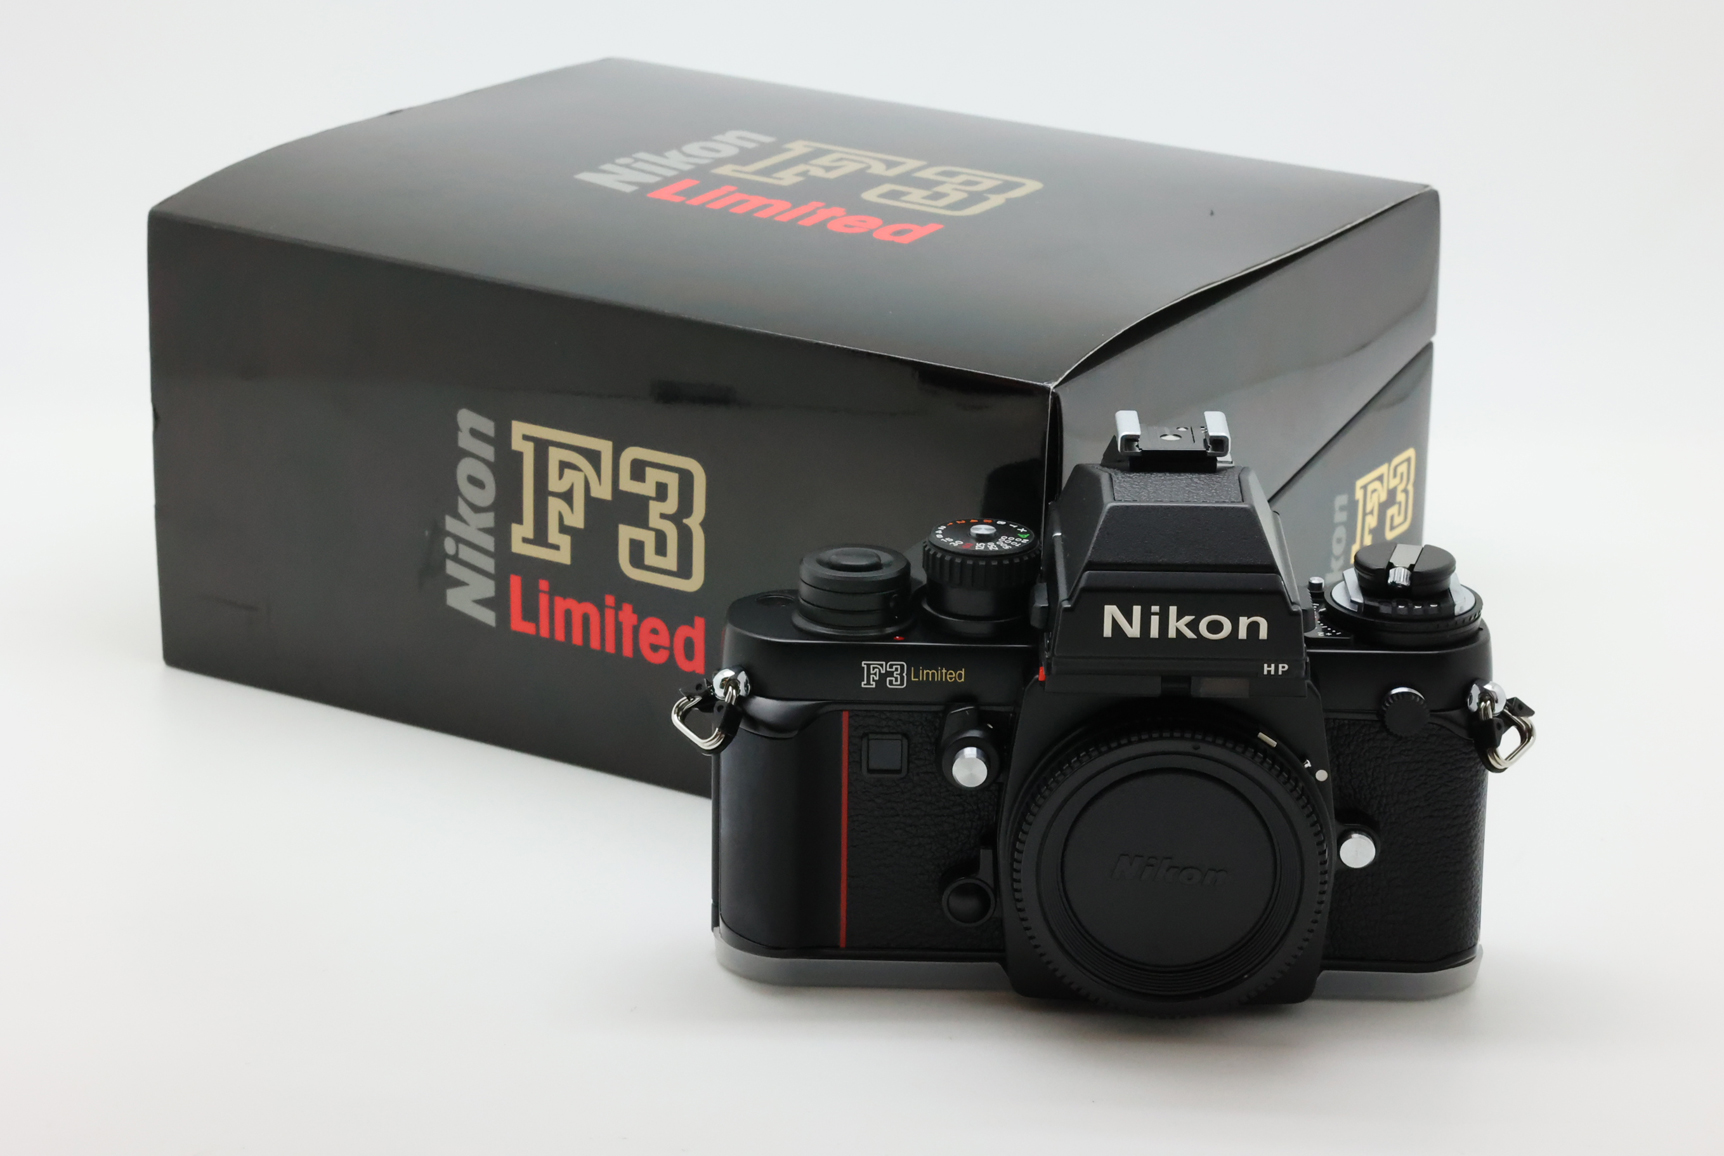 【美品】Nikon  F3 Limited ニコン F3 リミテッド